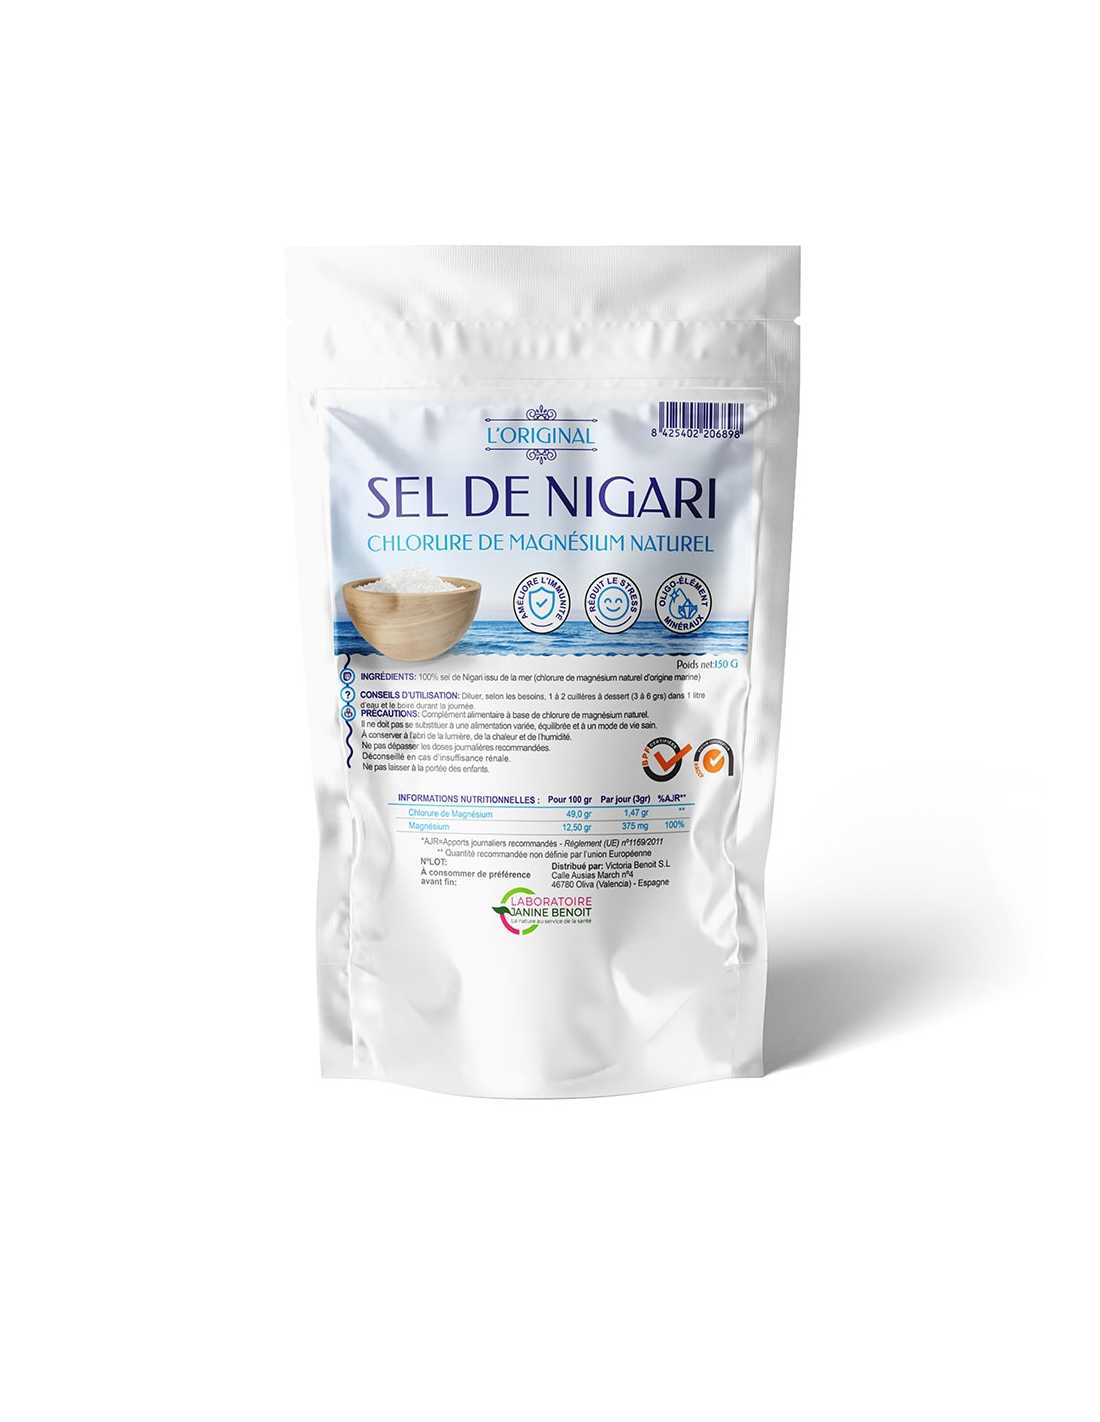 Le sel de Nigari, un allié naturel et efficace dans une cure minceur